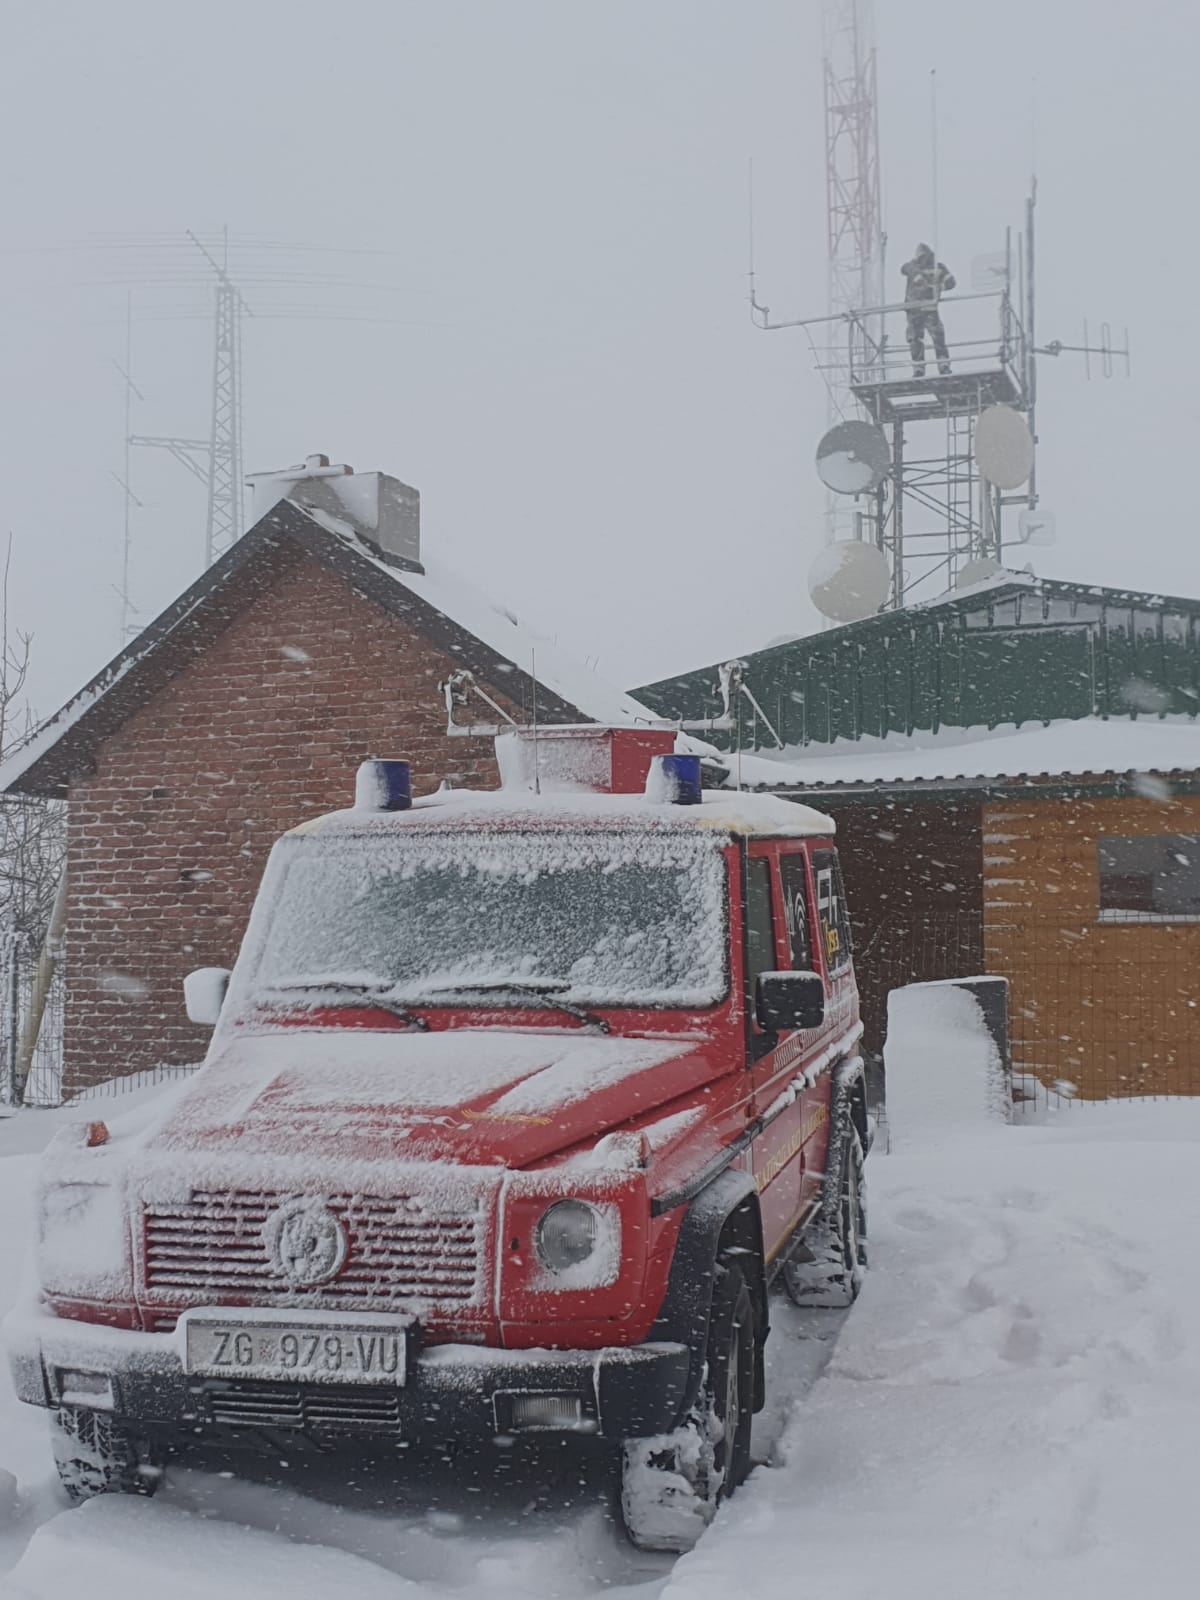 Zagrebački vatrogasci uskočili su petrinjskim kolegama i popravili repetitor za radio.